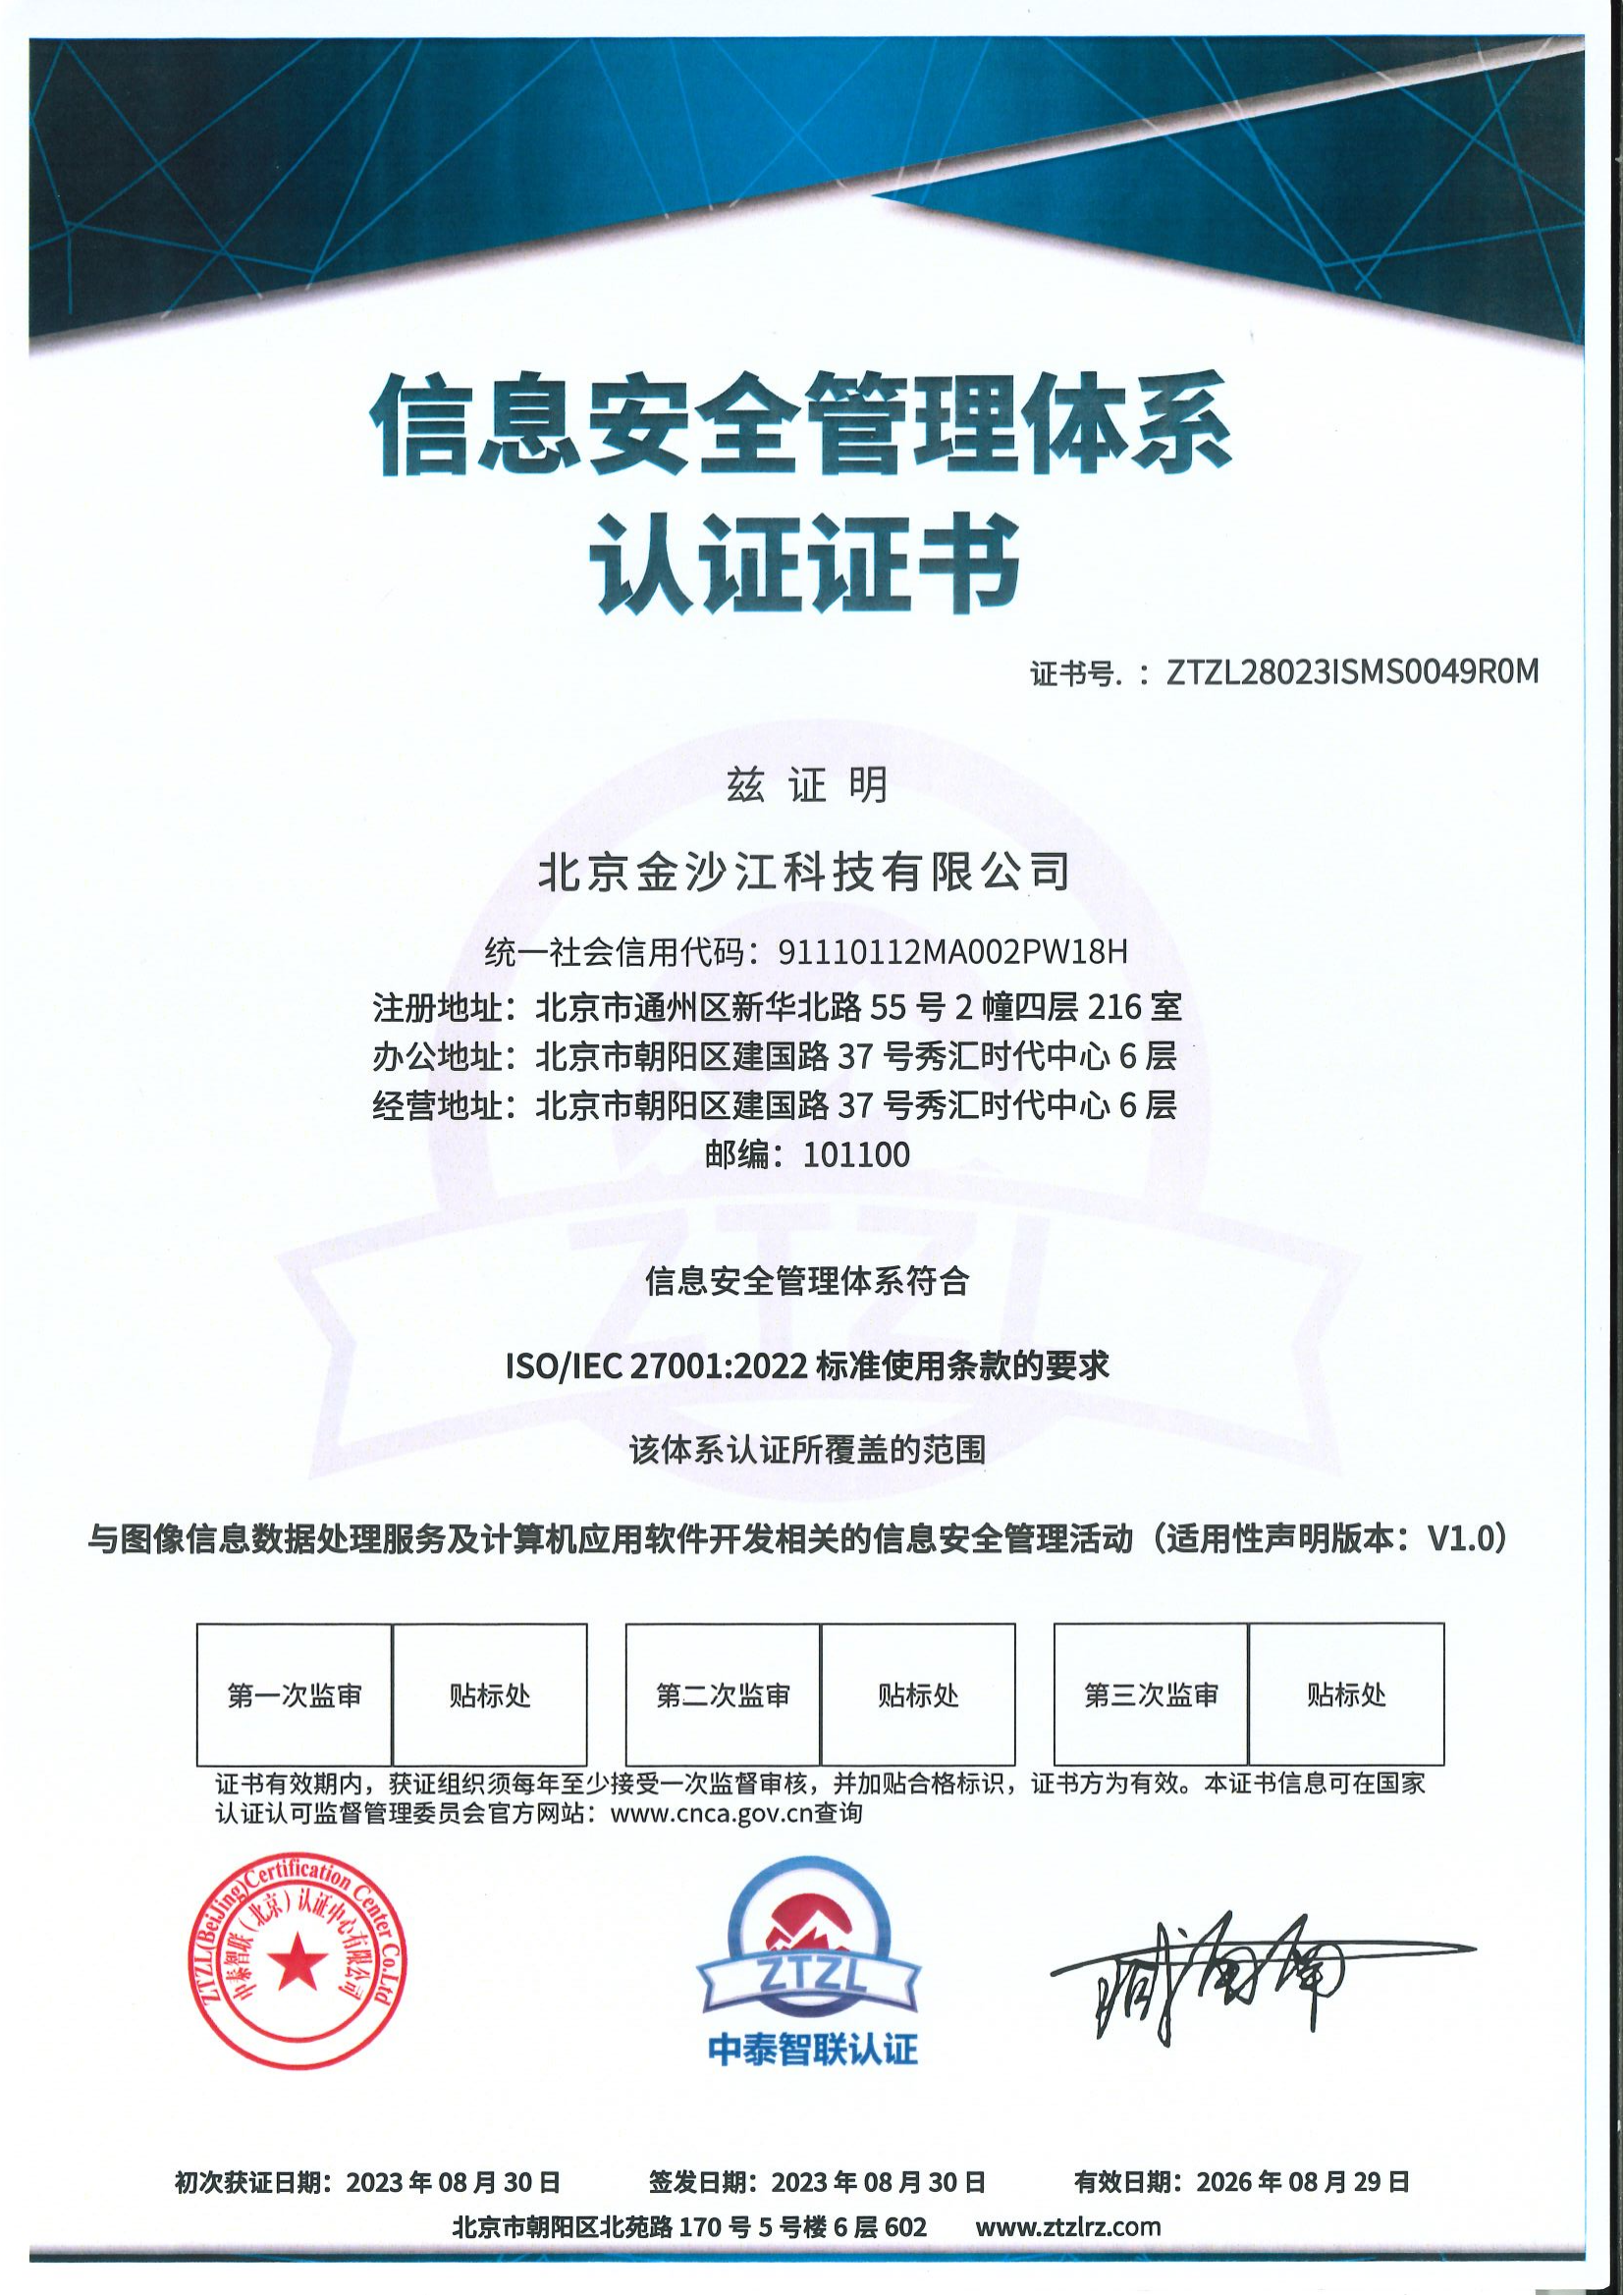 北京金沙江科技公司荣誉资质高新技术